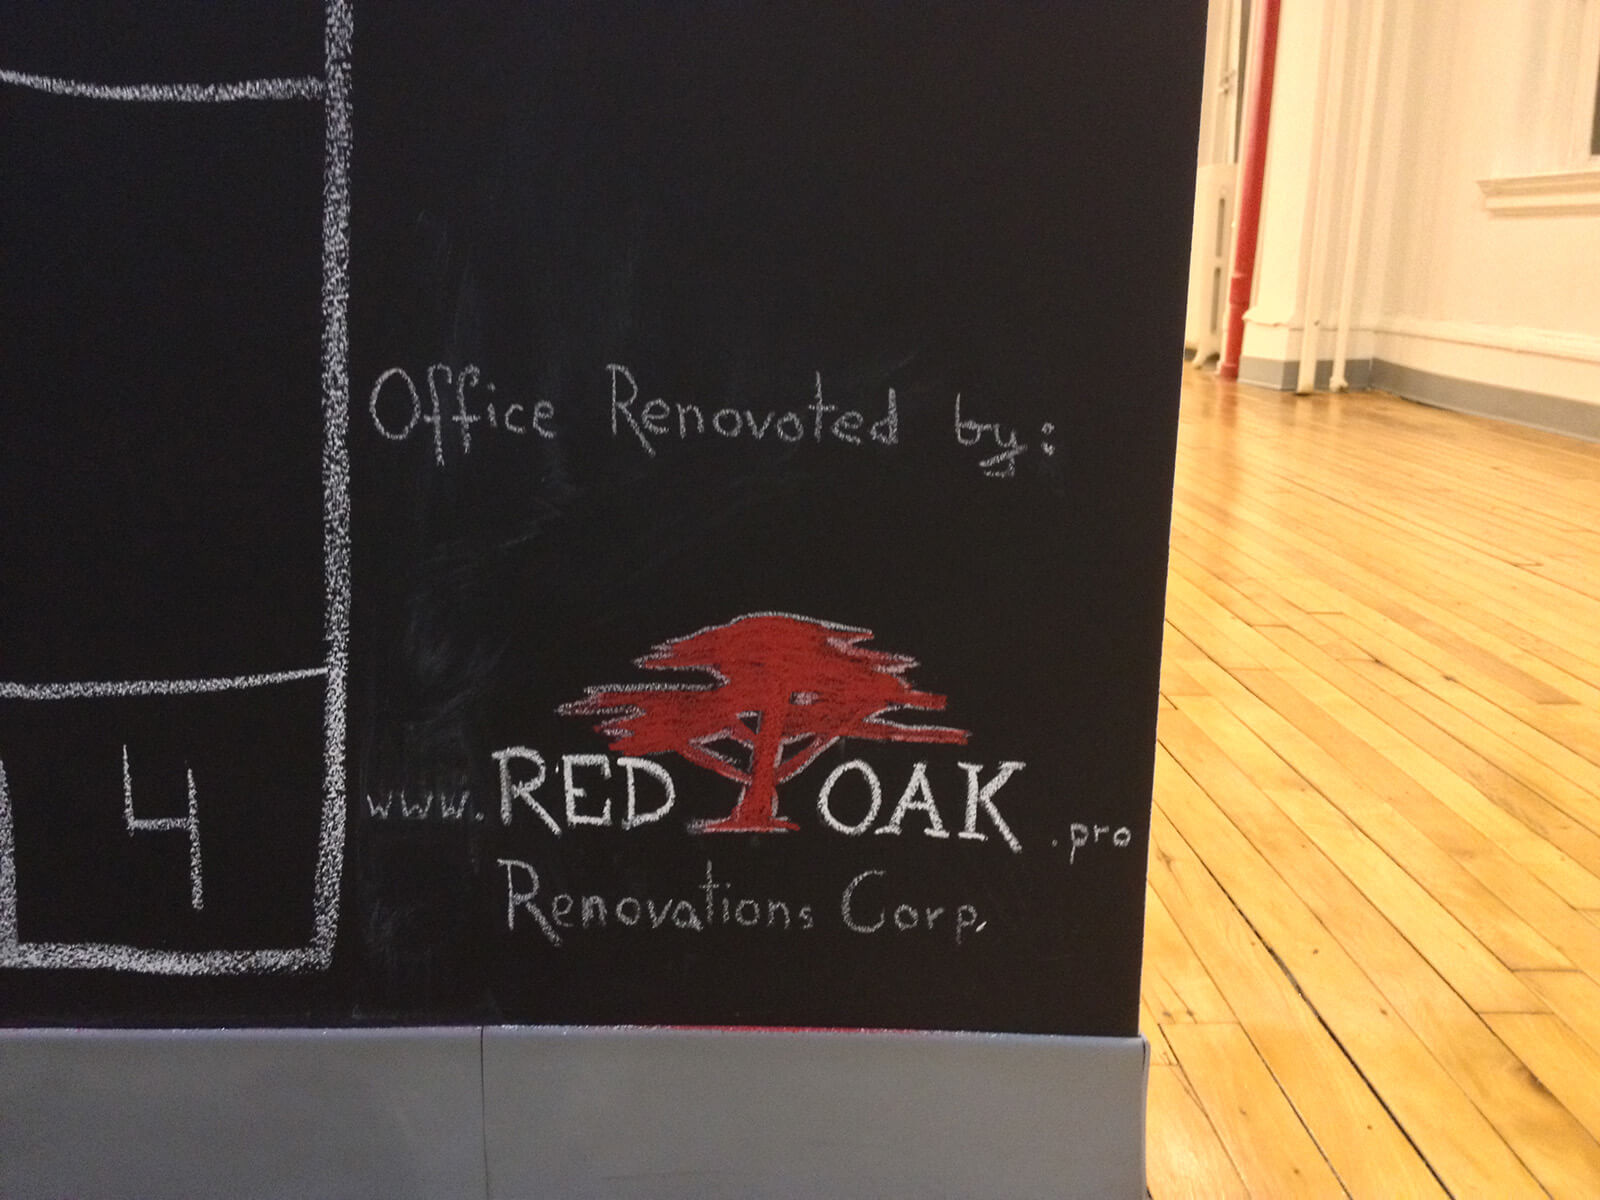 Red oak logo on a chalk board